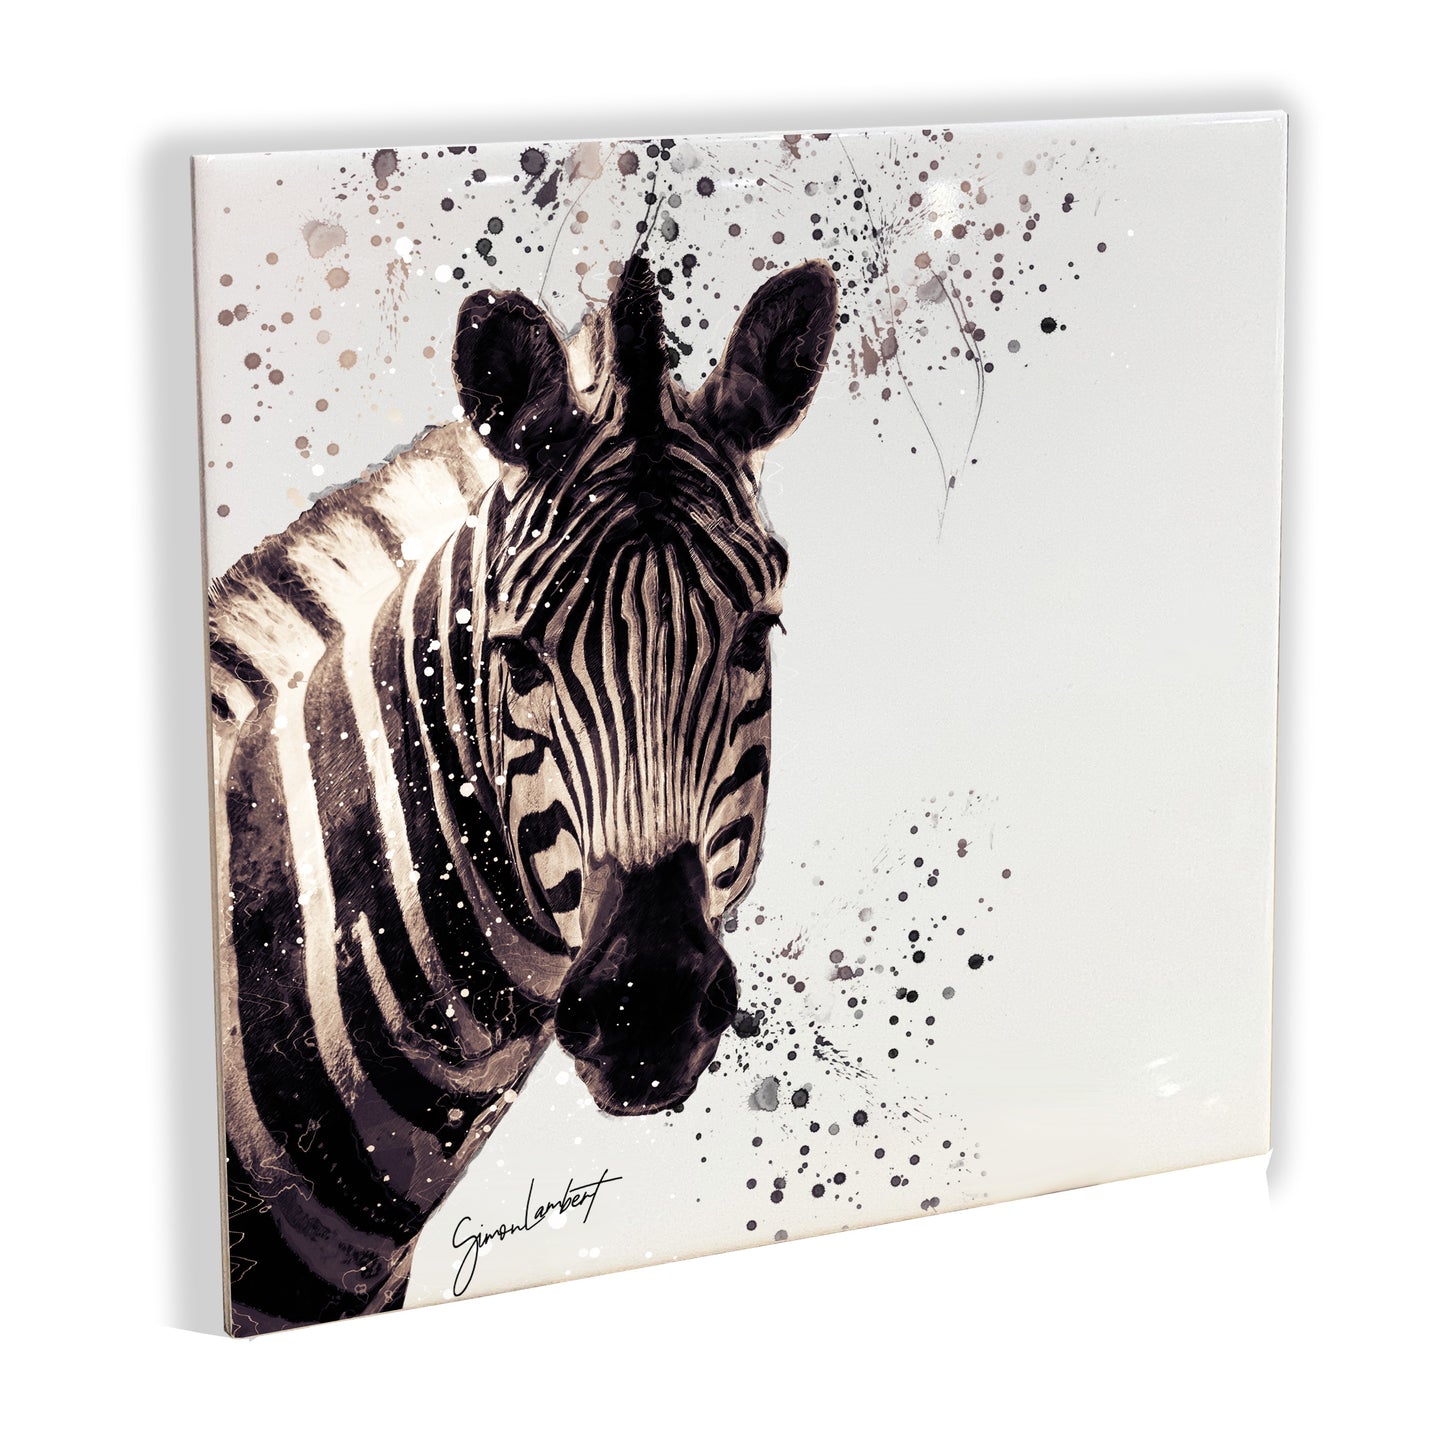 Zebra Portrait Brush Splatter Style Artwork - Framed CERAMIC TILE Art